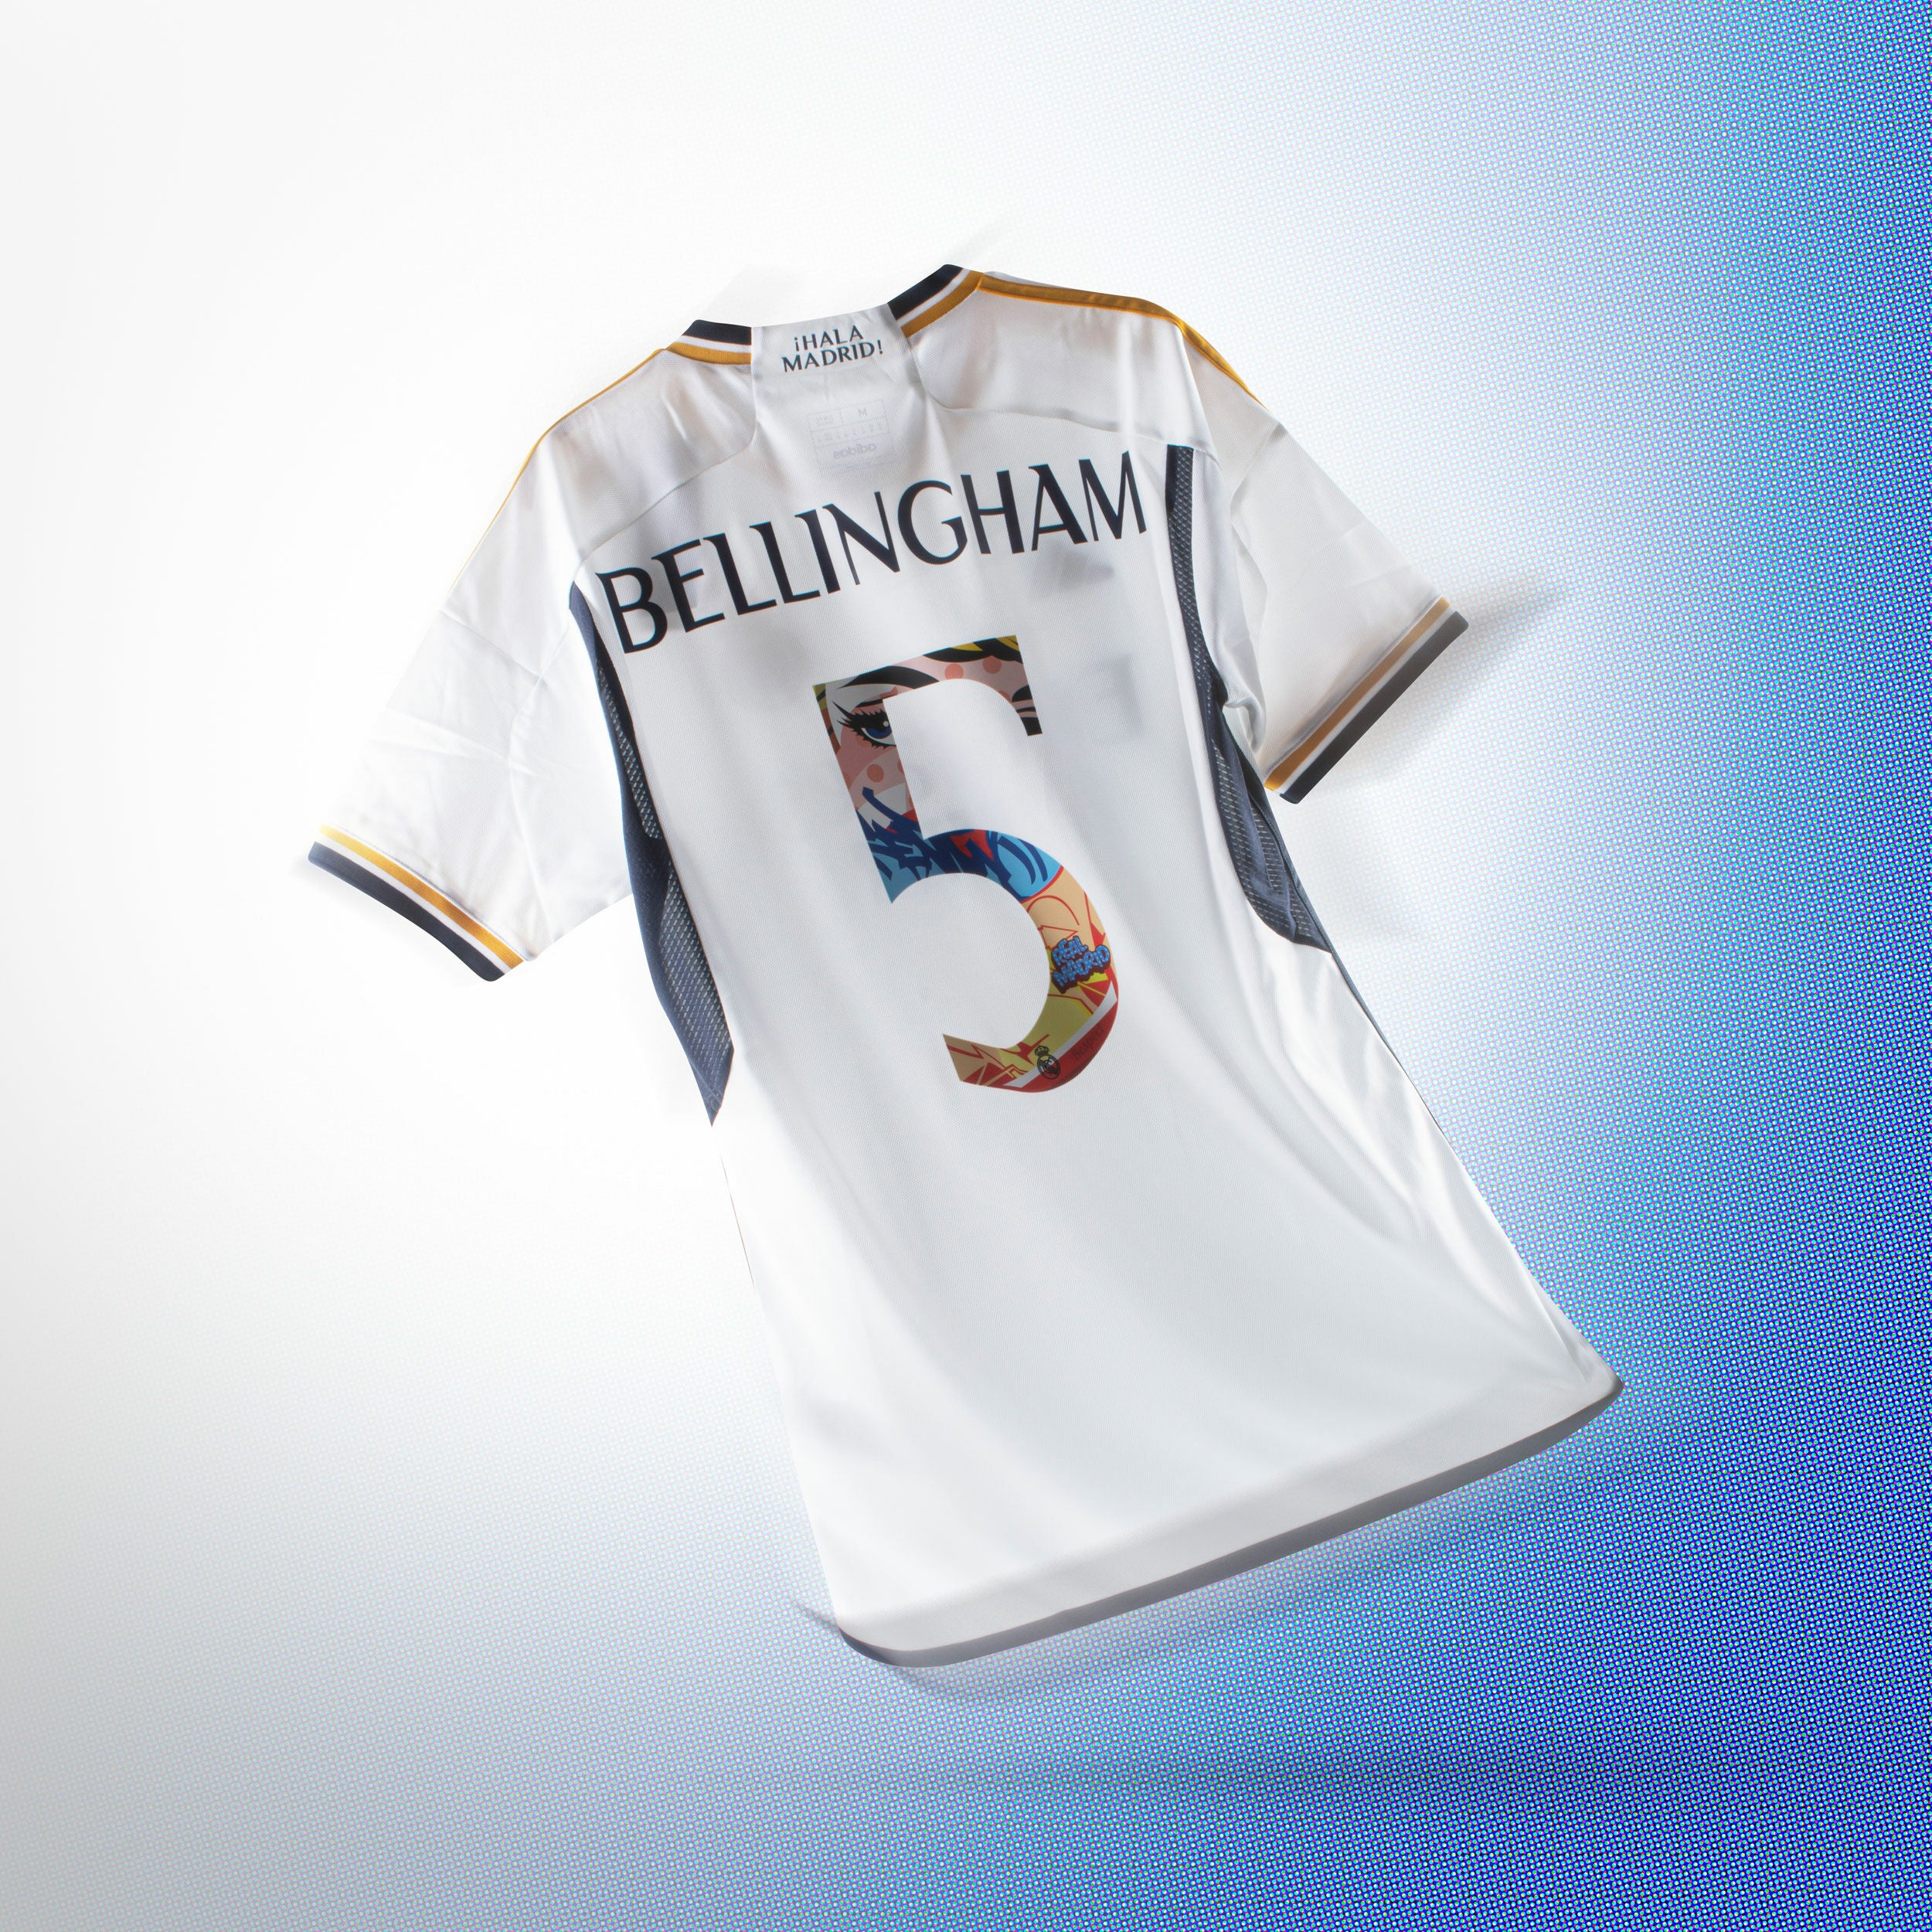 Puma Borussia Dortmund Home Shirt 2021-22 with Bellingham 22 Printing